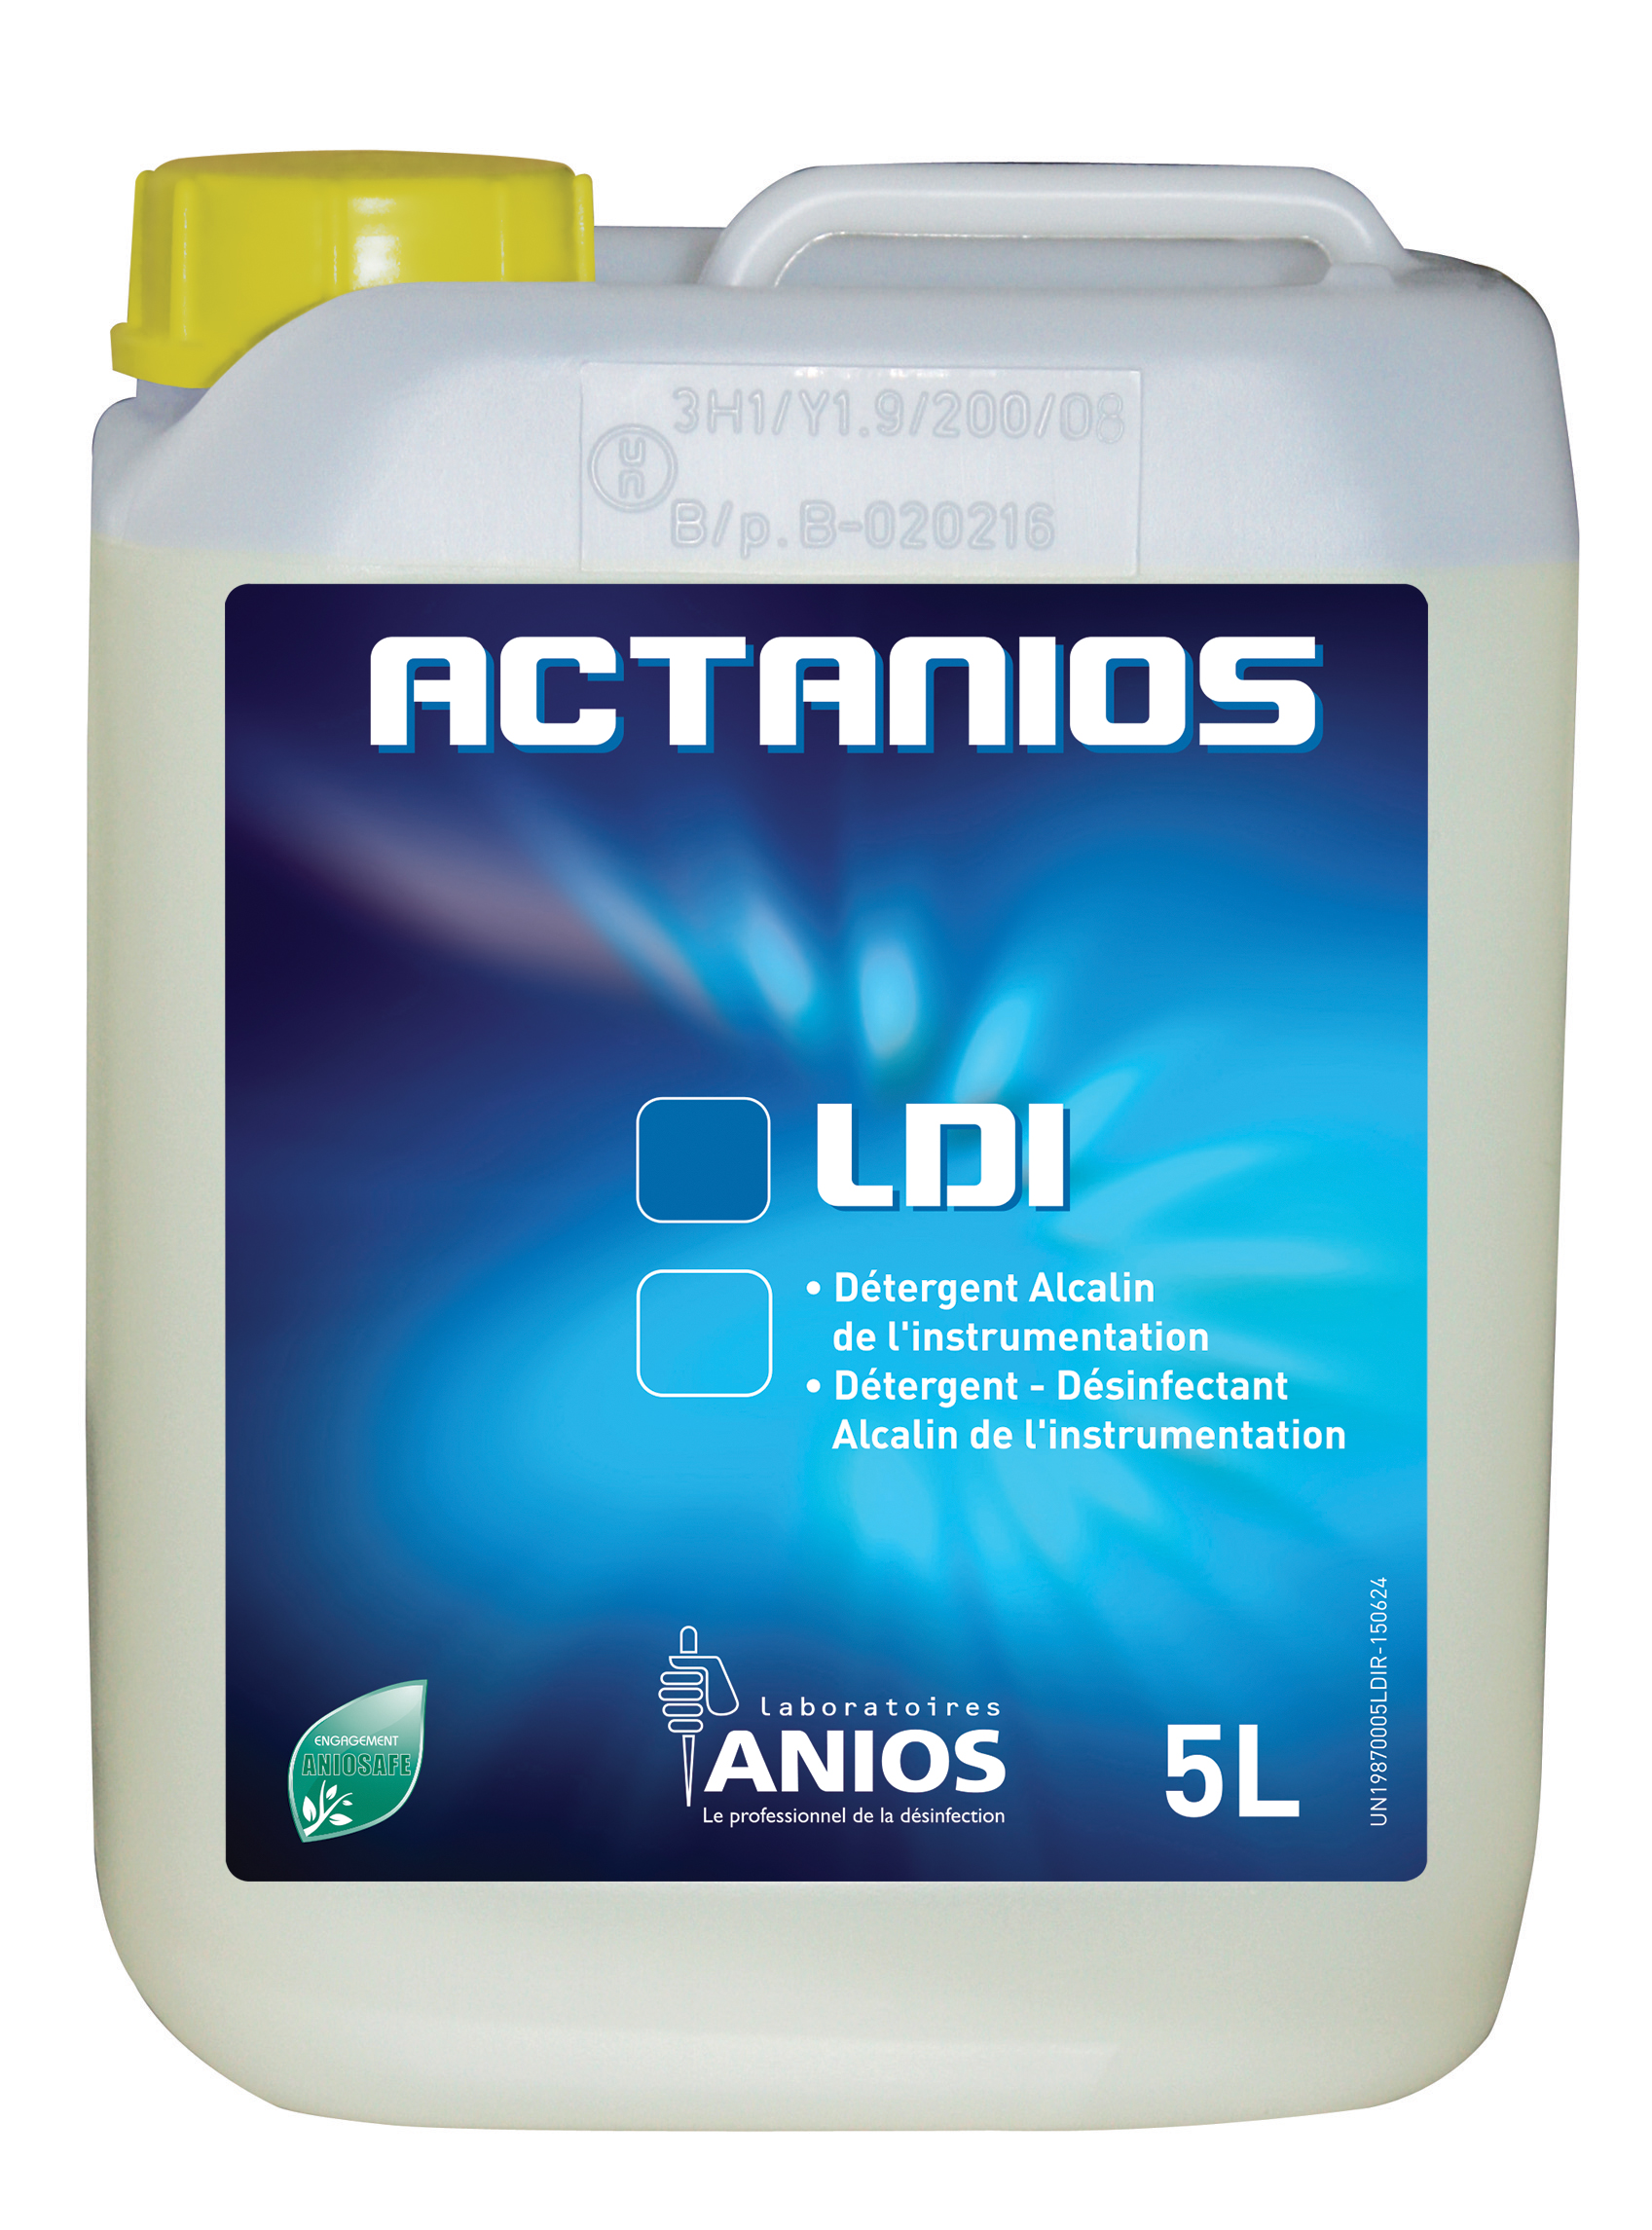 ACTANIOS LDI 2X5L